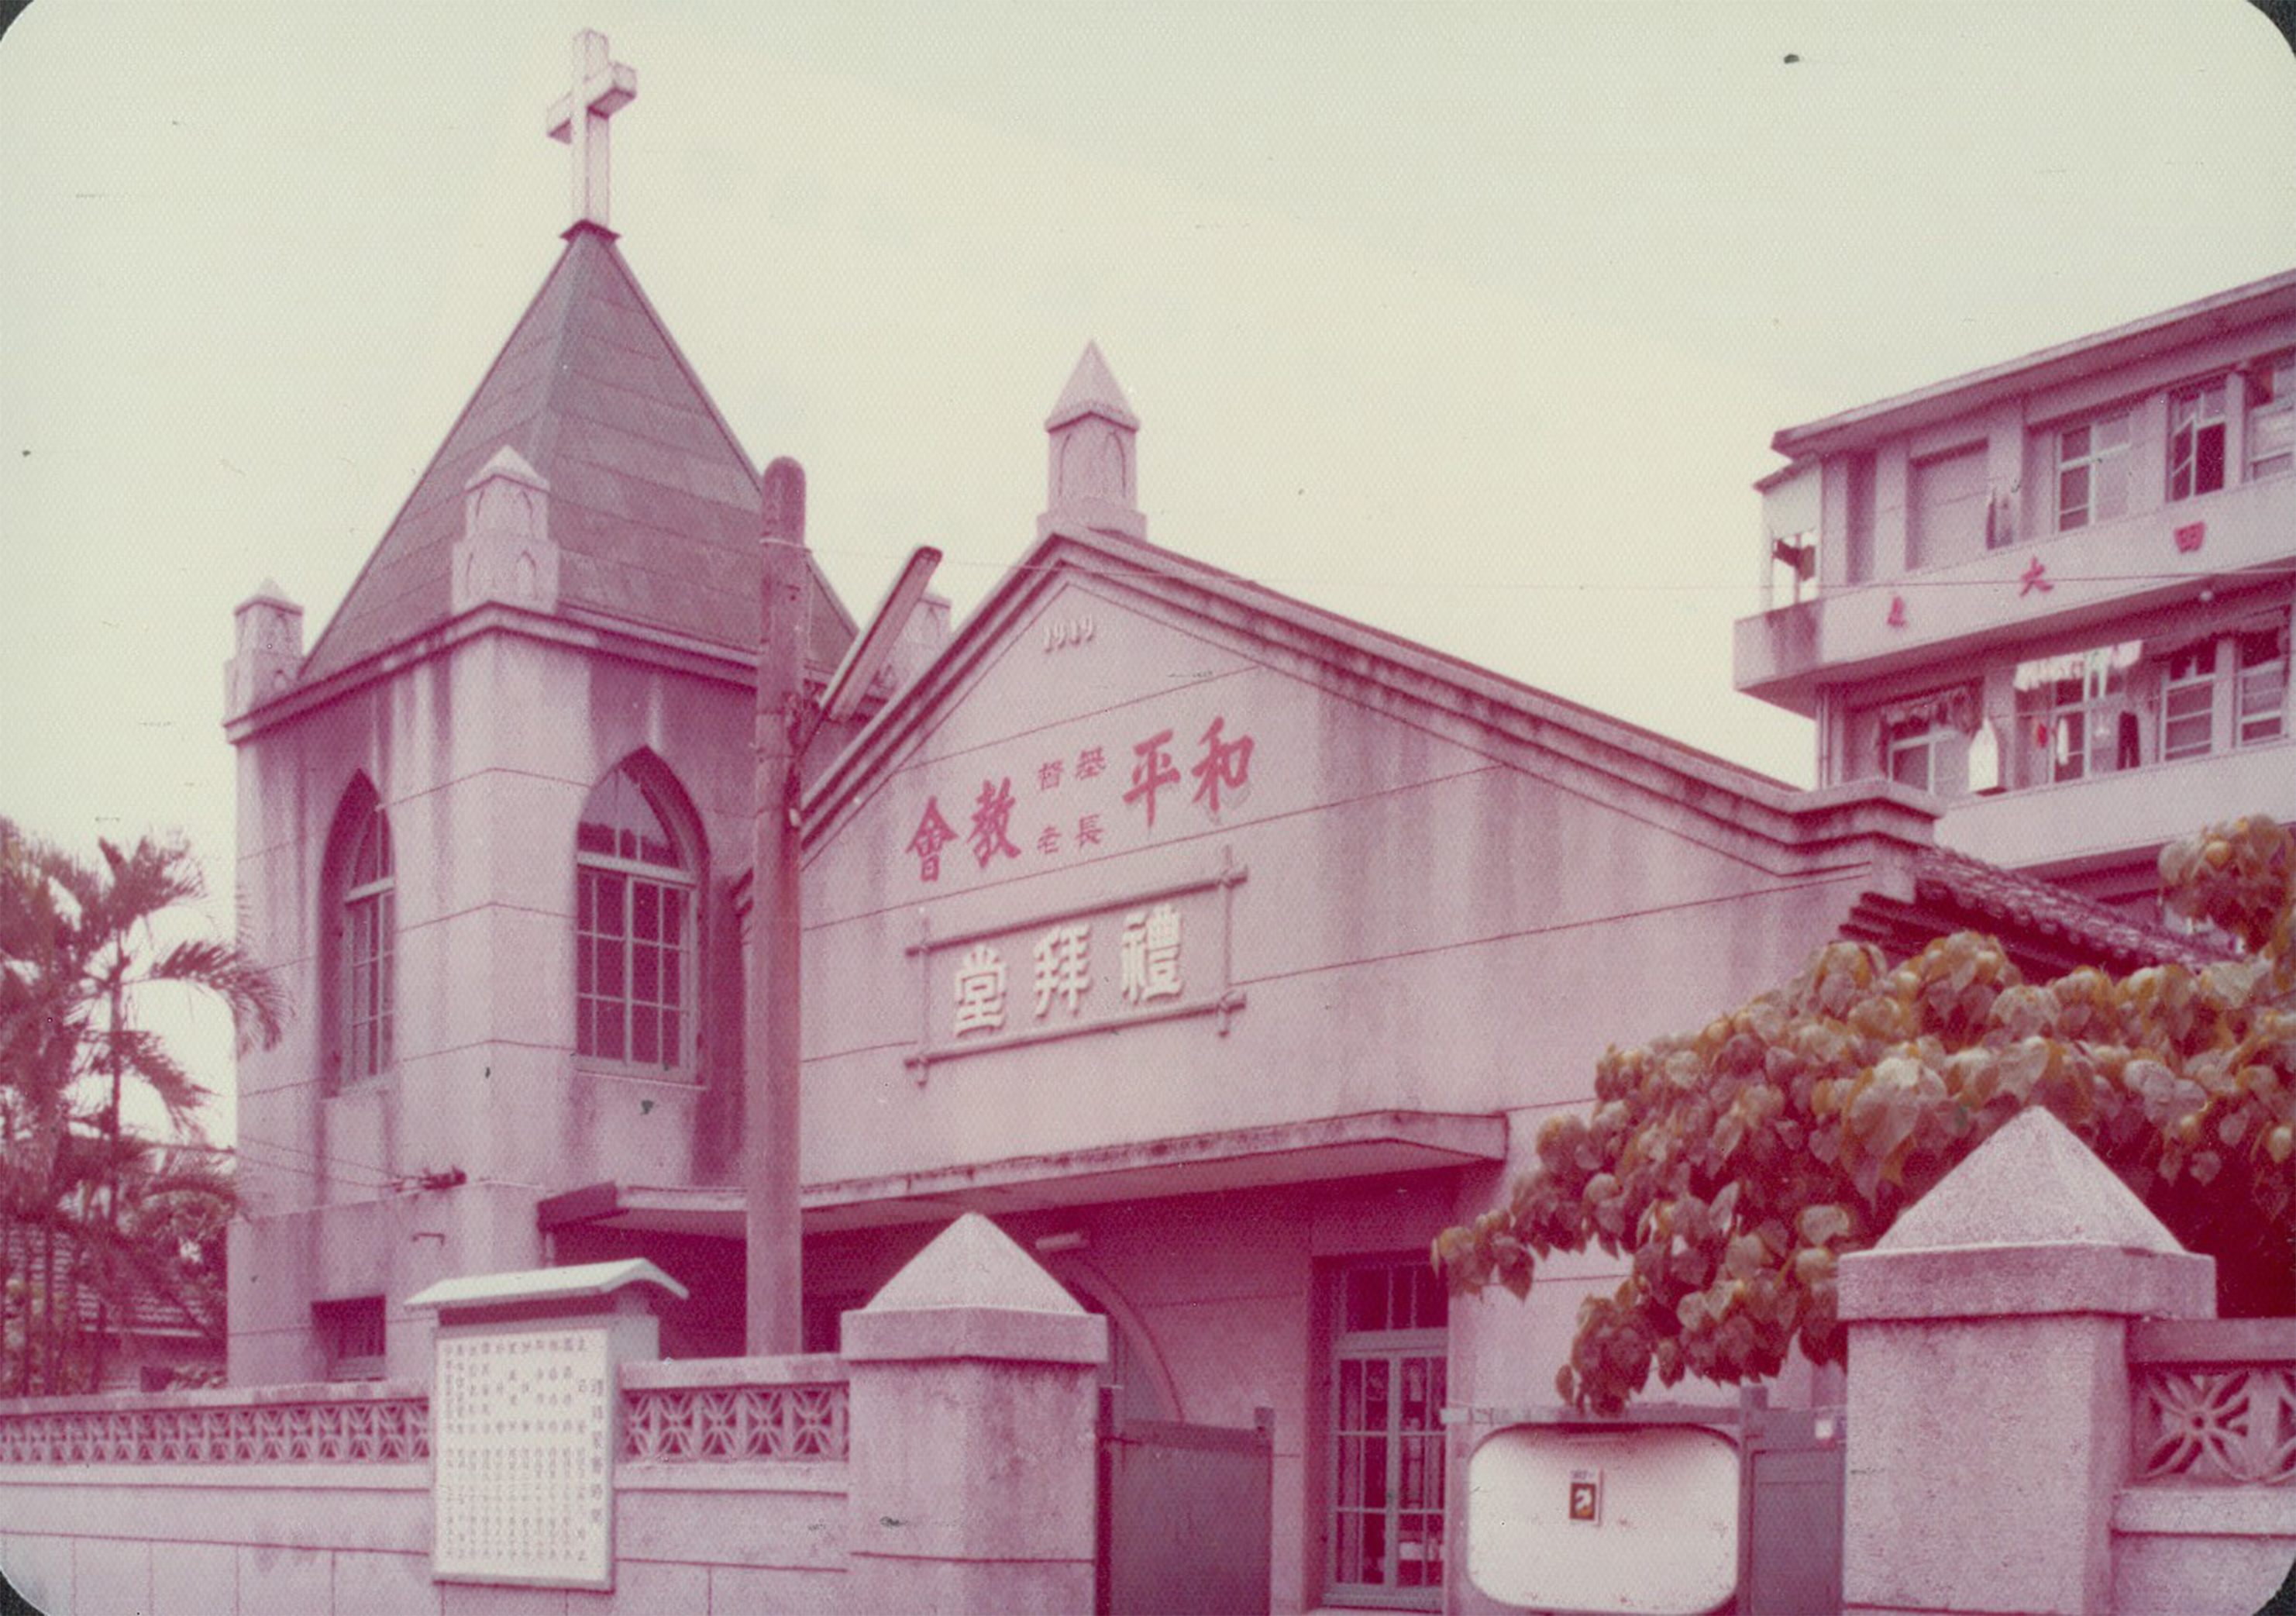 和平基督教會舊外觀(1977年)